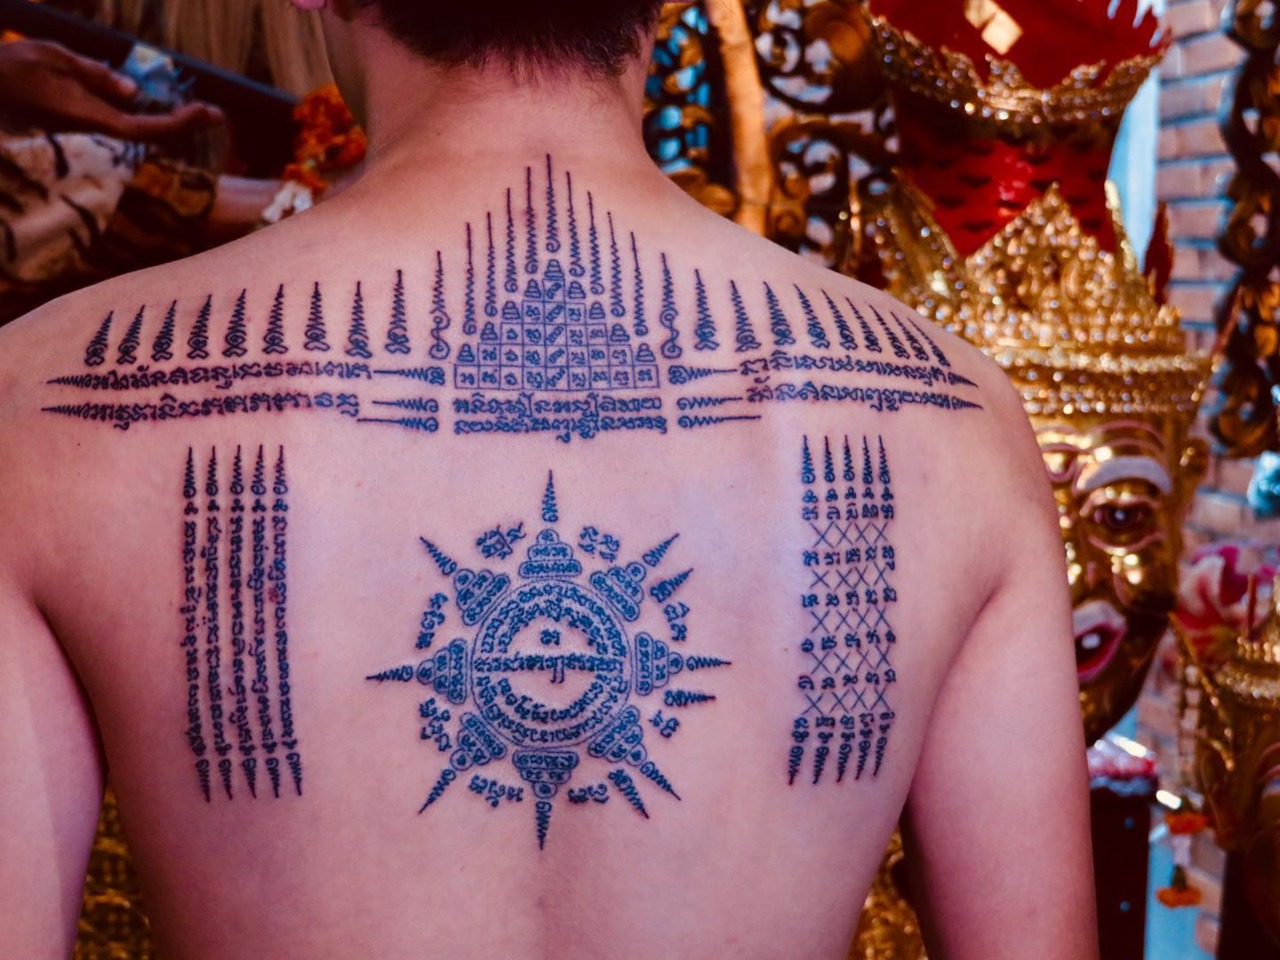 Сак-Янт — магическая татуировка: тур из Бангкока  | Цена 450$, отзывы, описание экскурсии